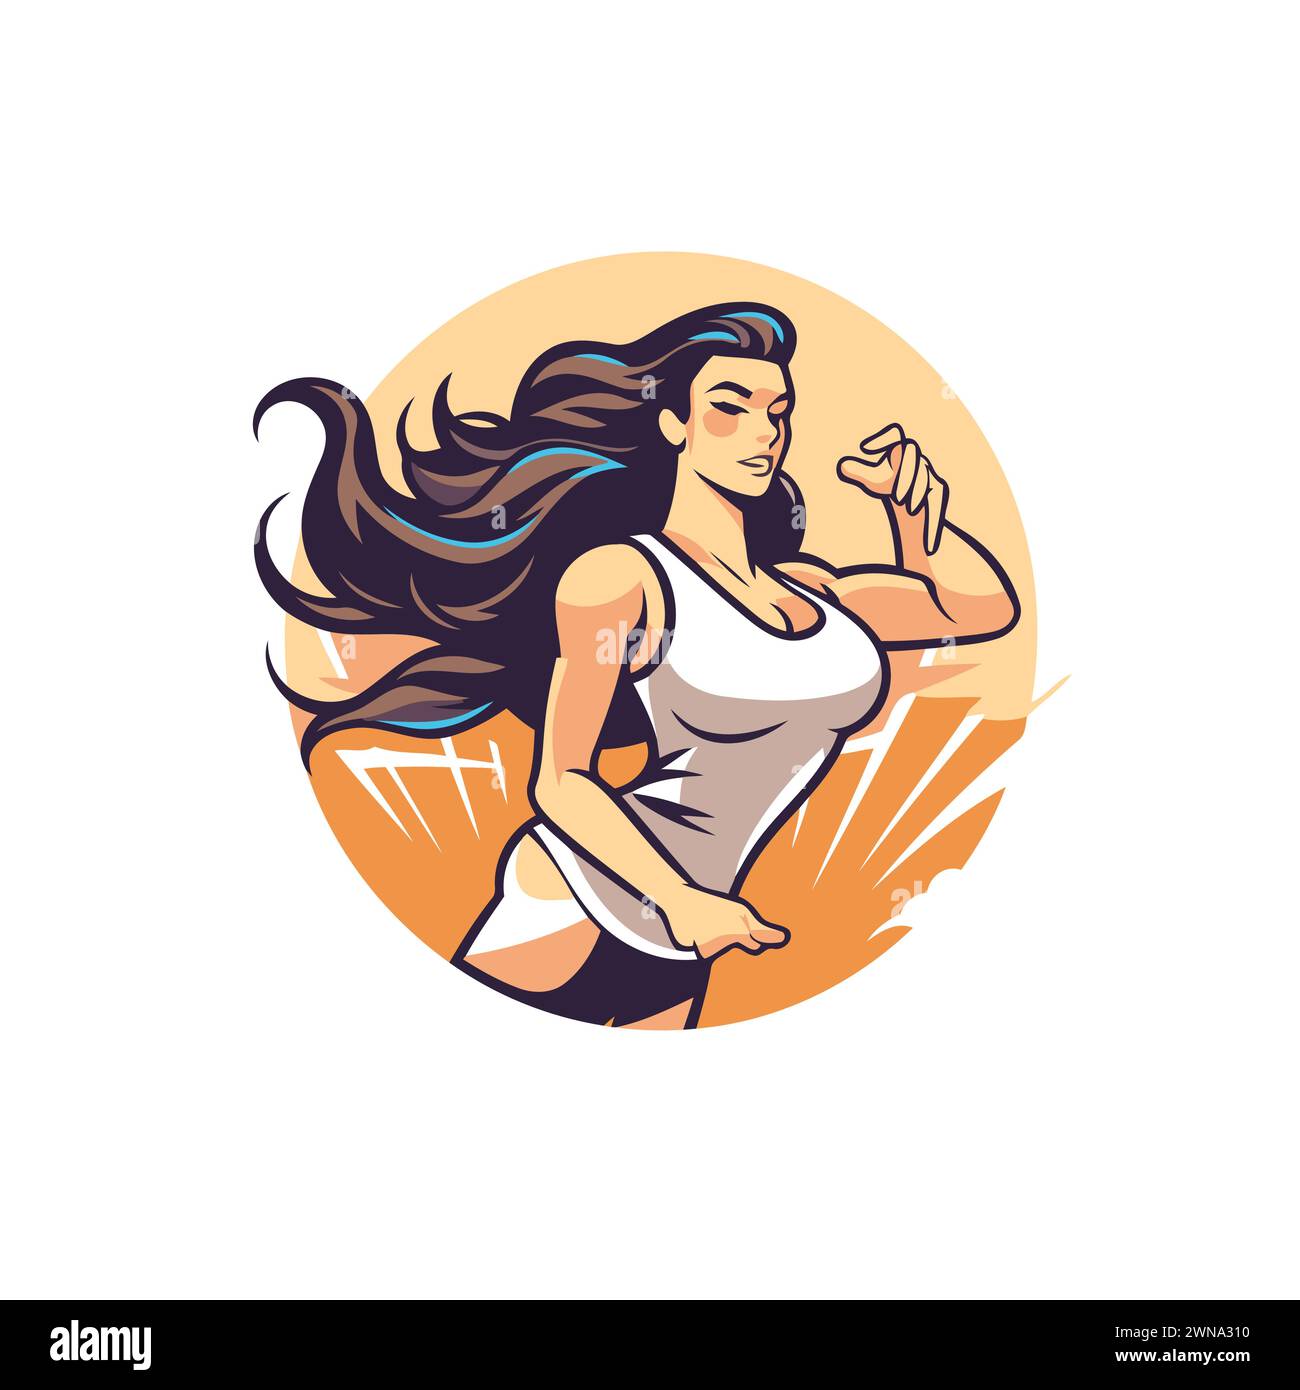 Ropa Deportiva Para Mujer Para Correr. Ilustración Vectorial Ilustraciones  svg, vectoriales, clip art vectorizado libre de derechos. Image 78841802